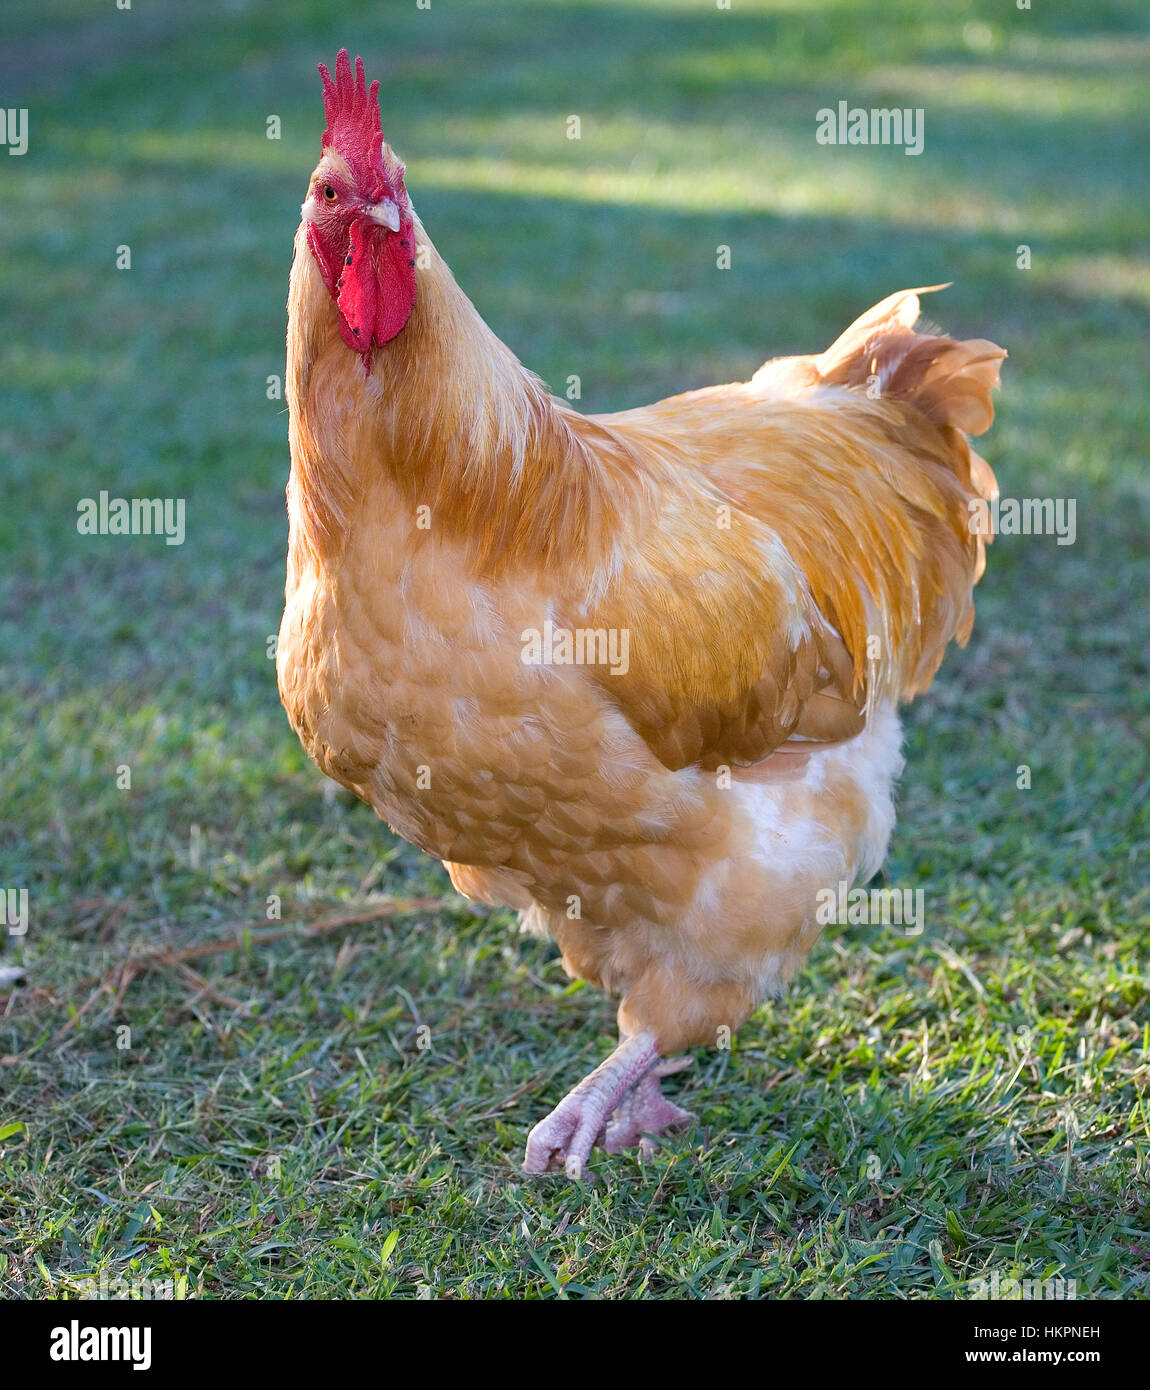 Coq de poulet c'est orange sur une pelouse verte Banque D'Images